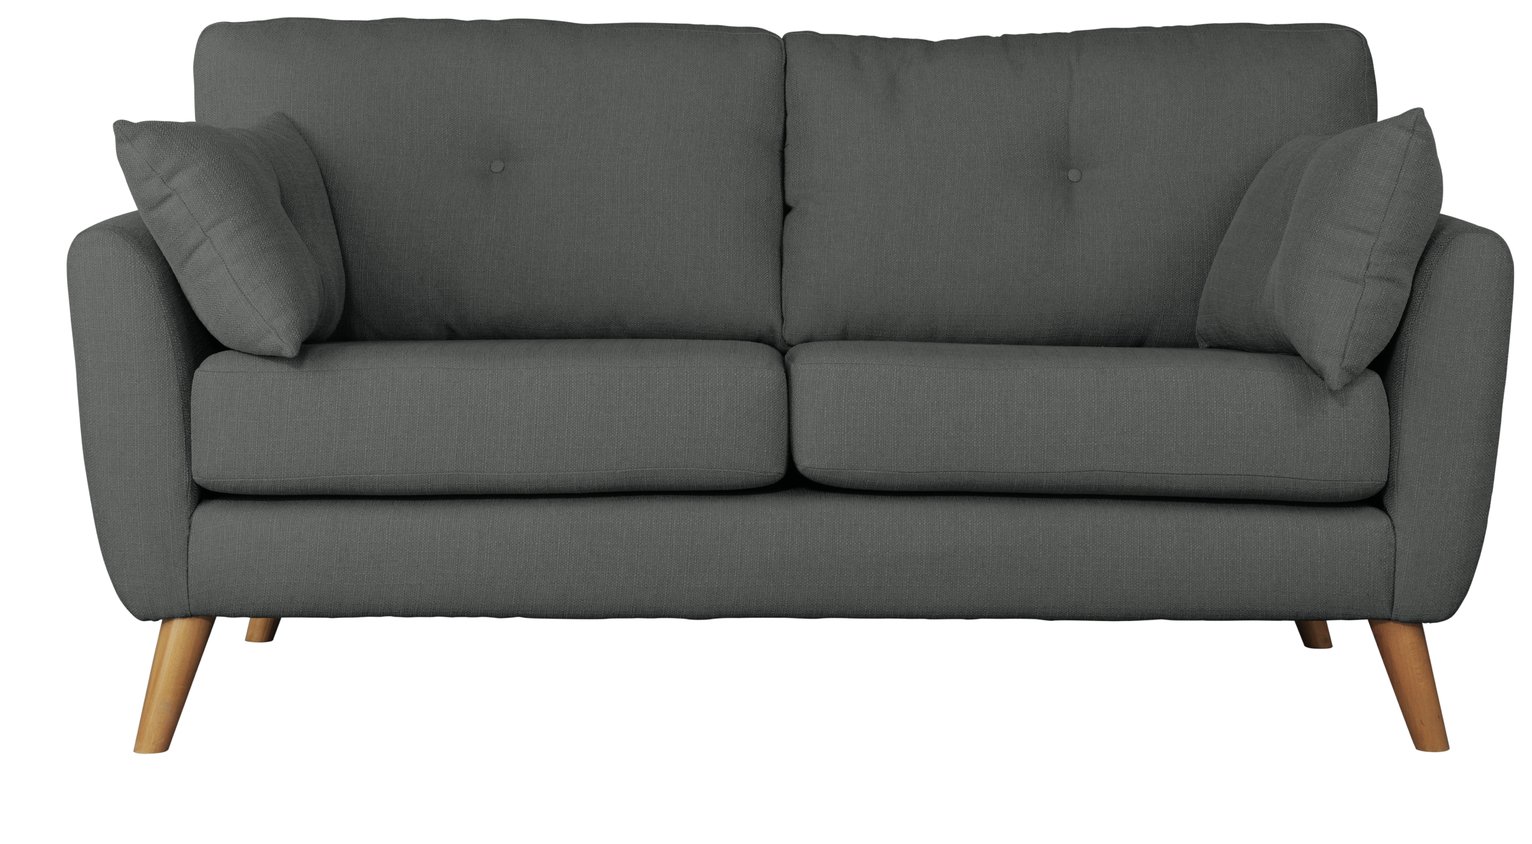 Argos Home Kari 3 Seater Fabric Sofa - Charcoal